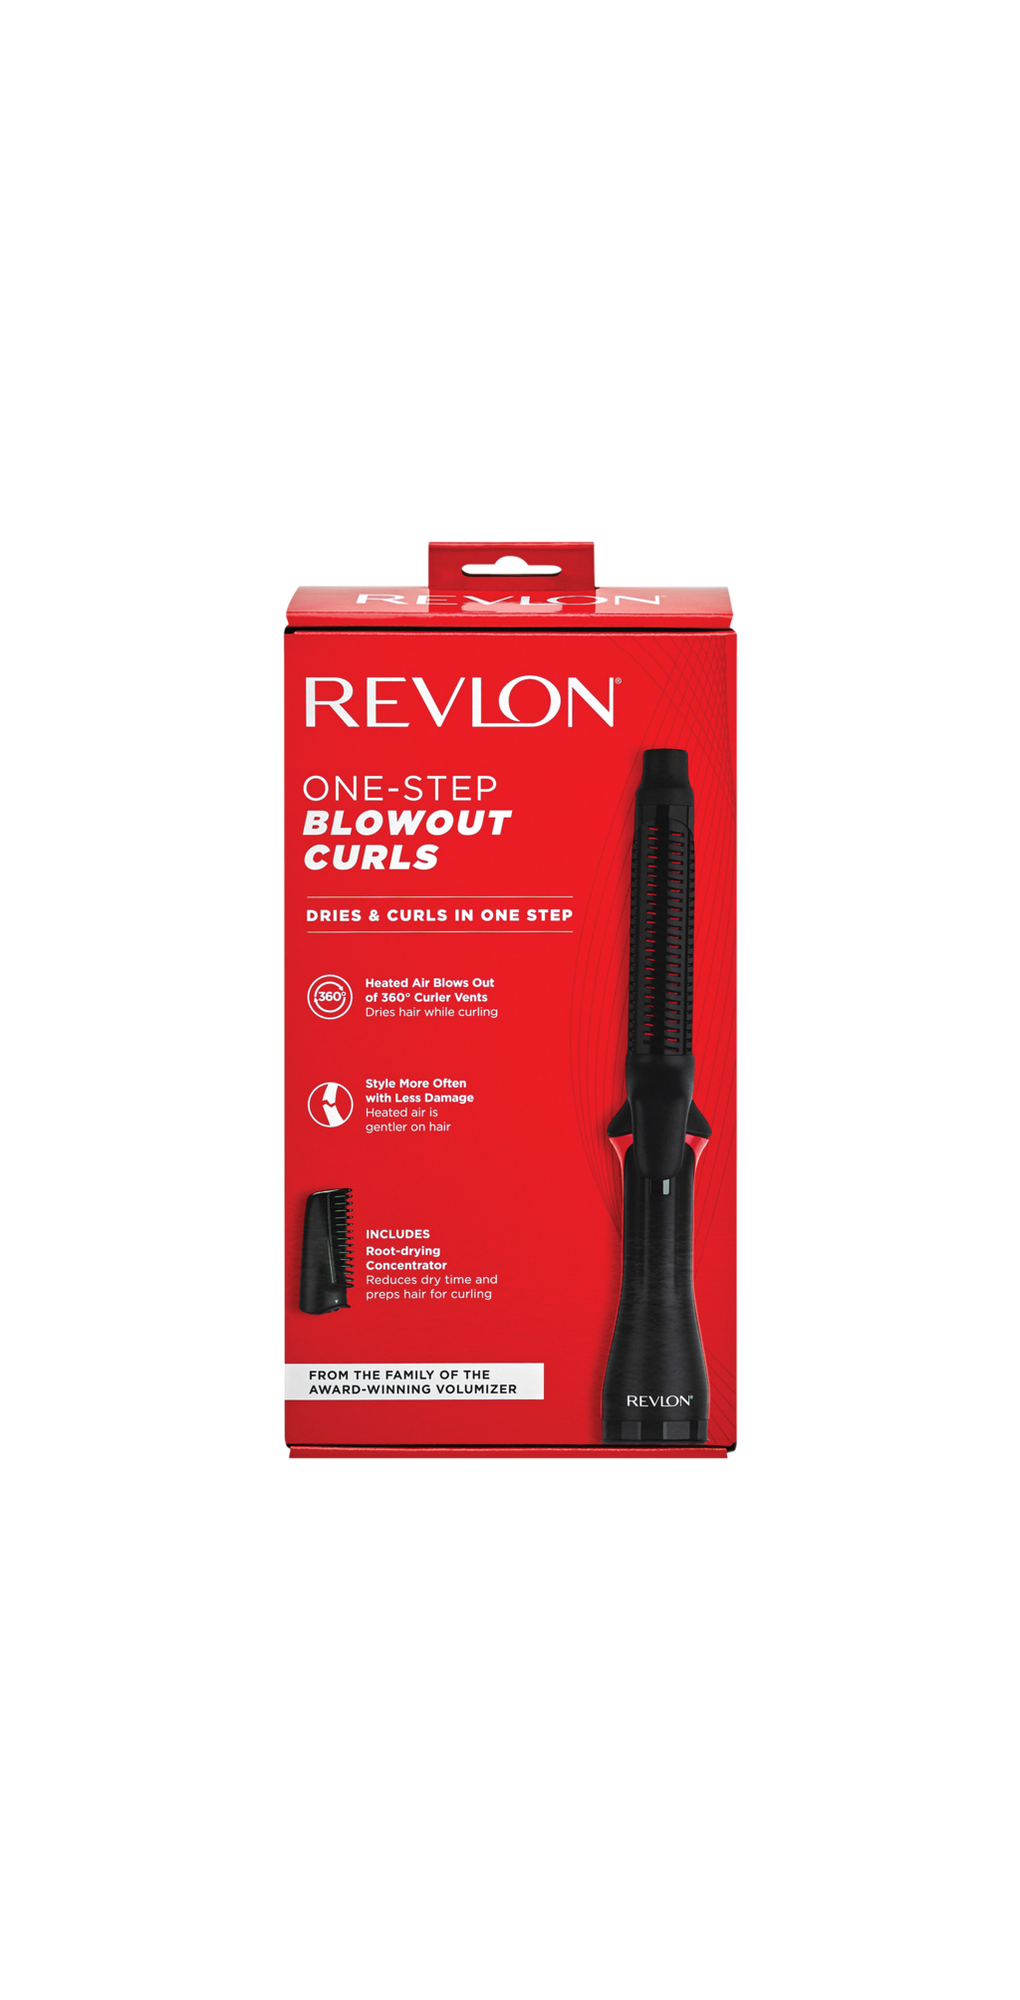 One-Step Blowout Curls - Revlon